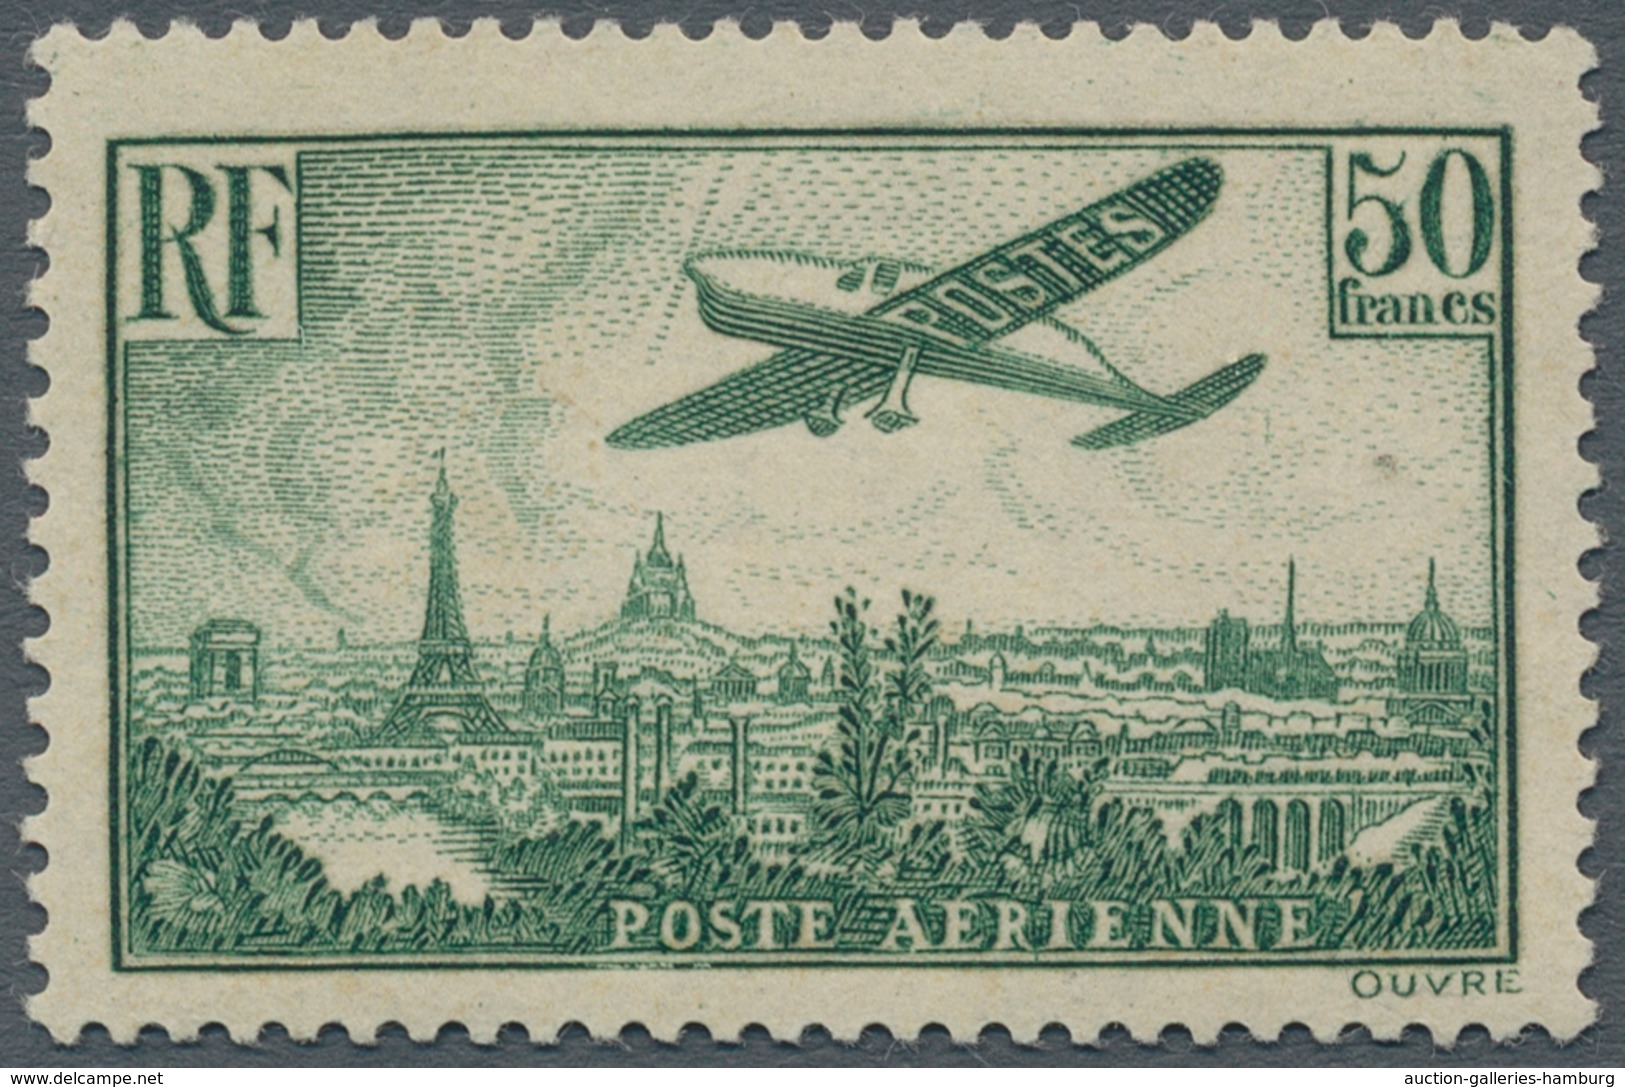 Frankreich: 1936, Airplane Over Paris, 50 Fr Dark Green, Mint And Rare Offered!, Signed (Mi€2.000,-) - Gebraucht